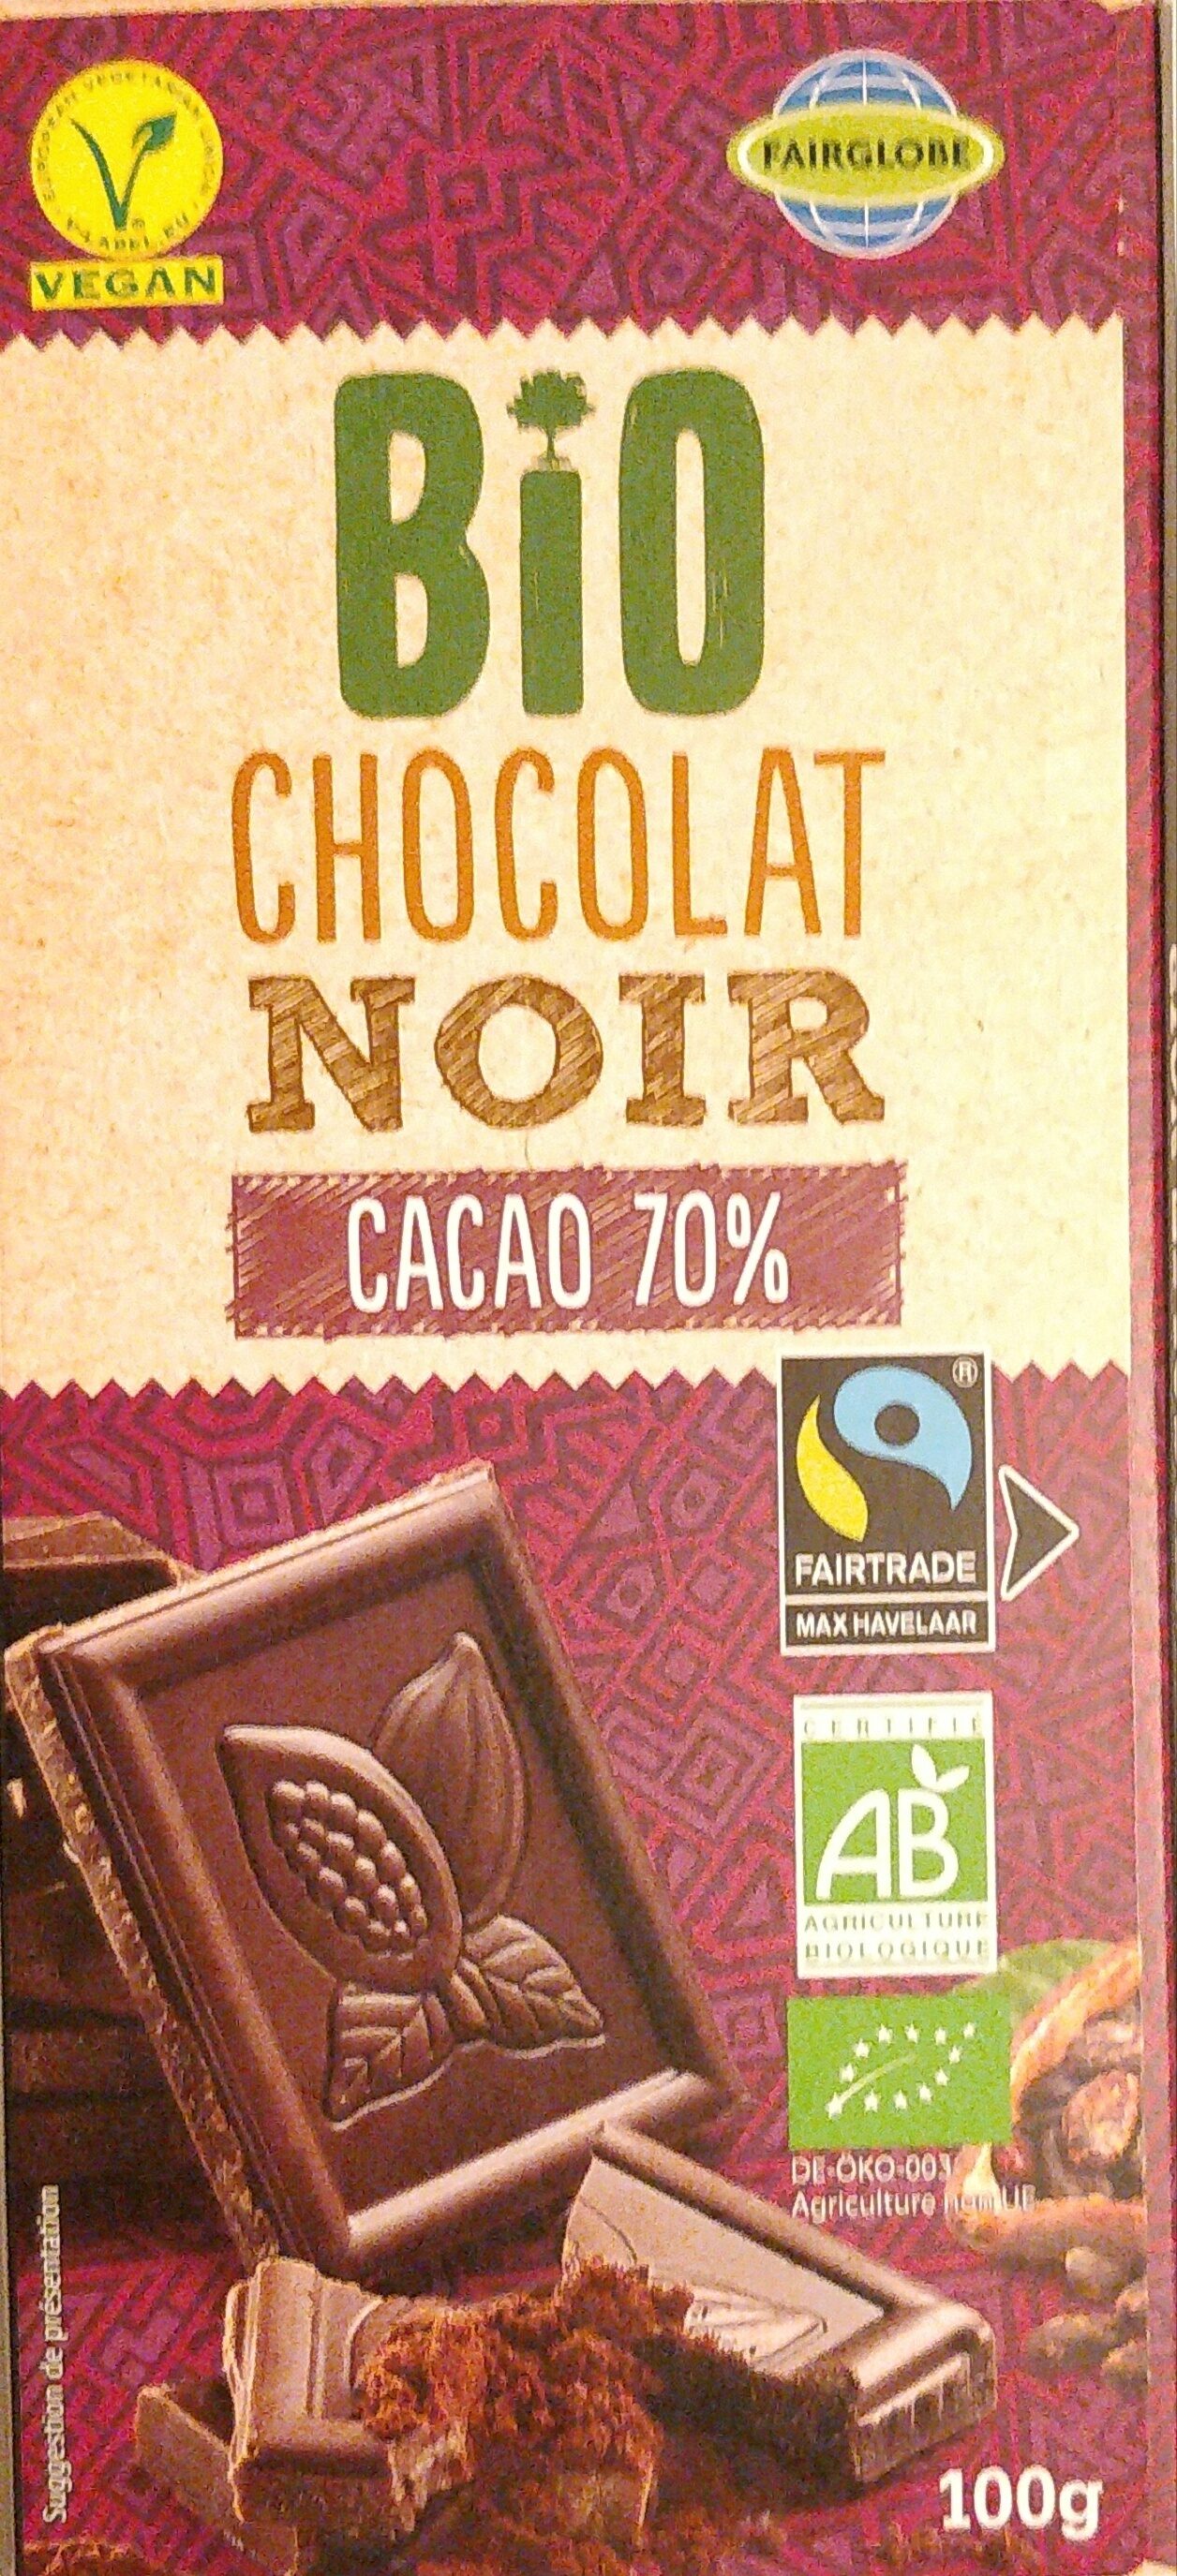 Chocolat noir bio cacao 70% - Produto - fr